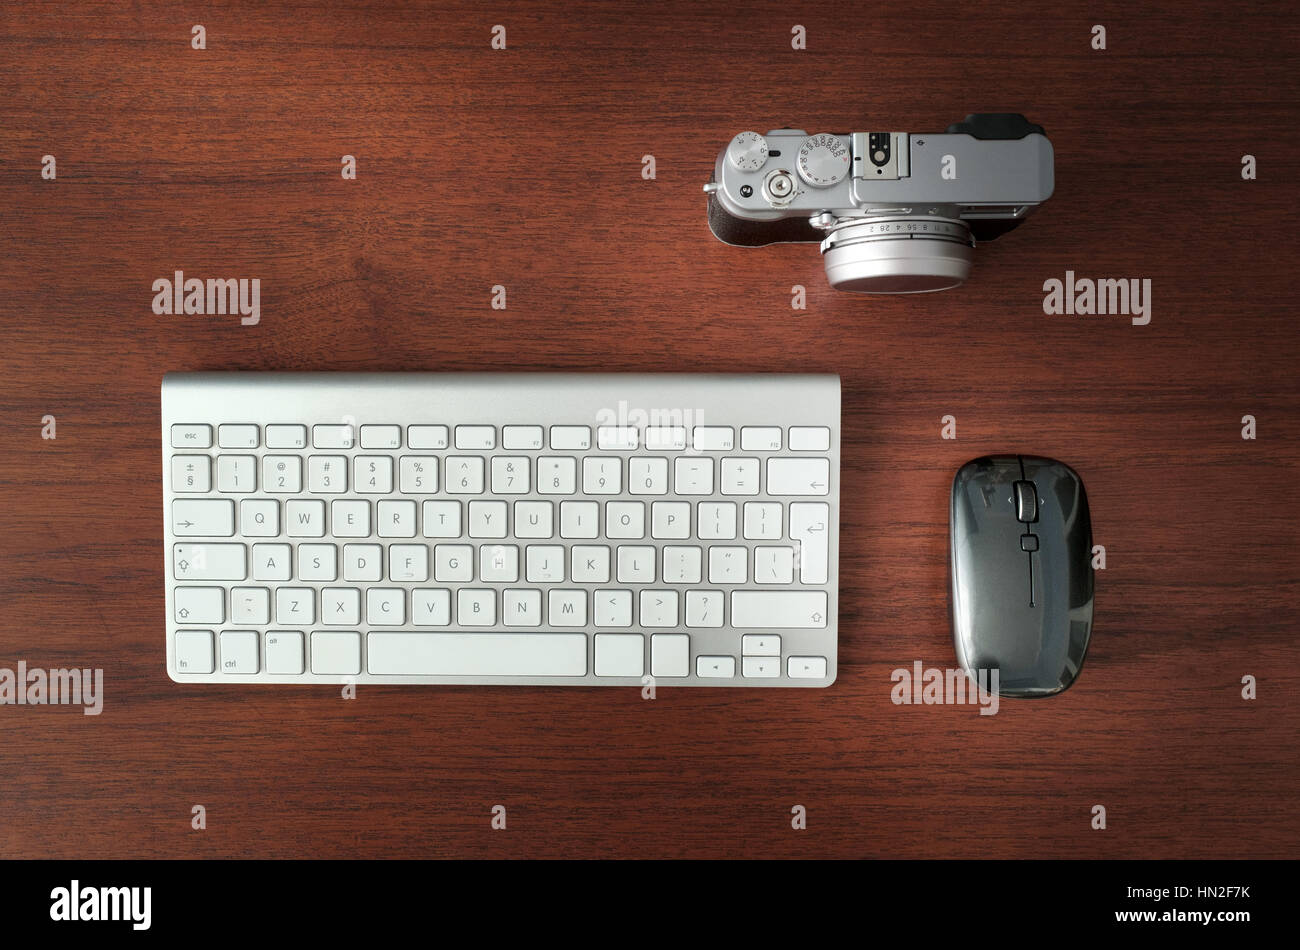 Digital cámara mirrorless, ratón y teclado de escritorio de madera marrón Foto de stock